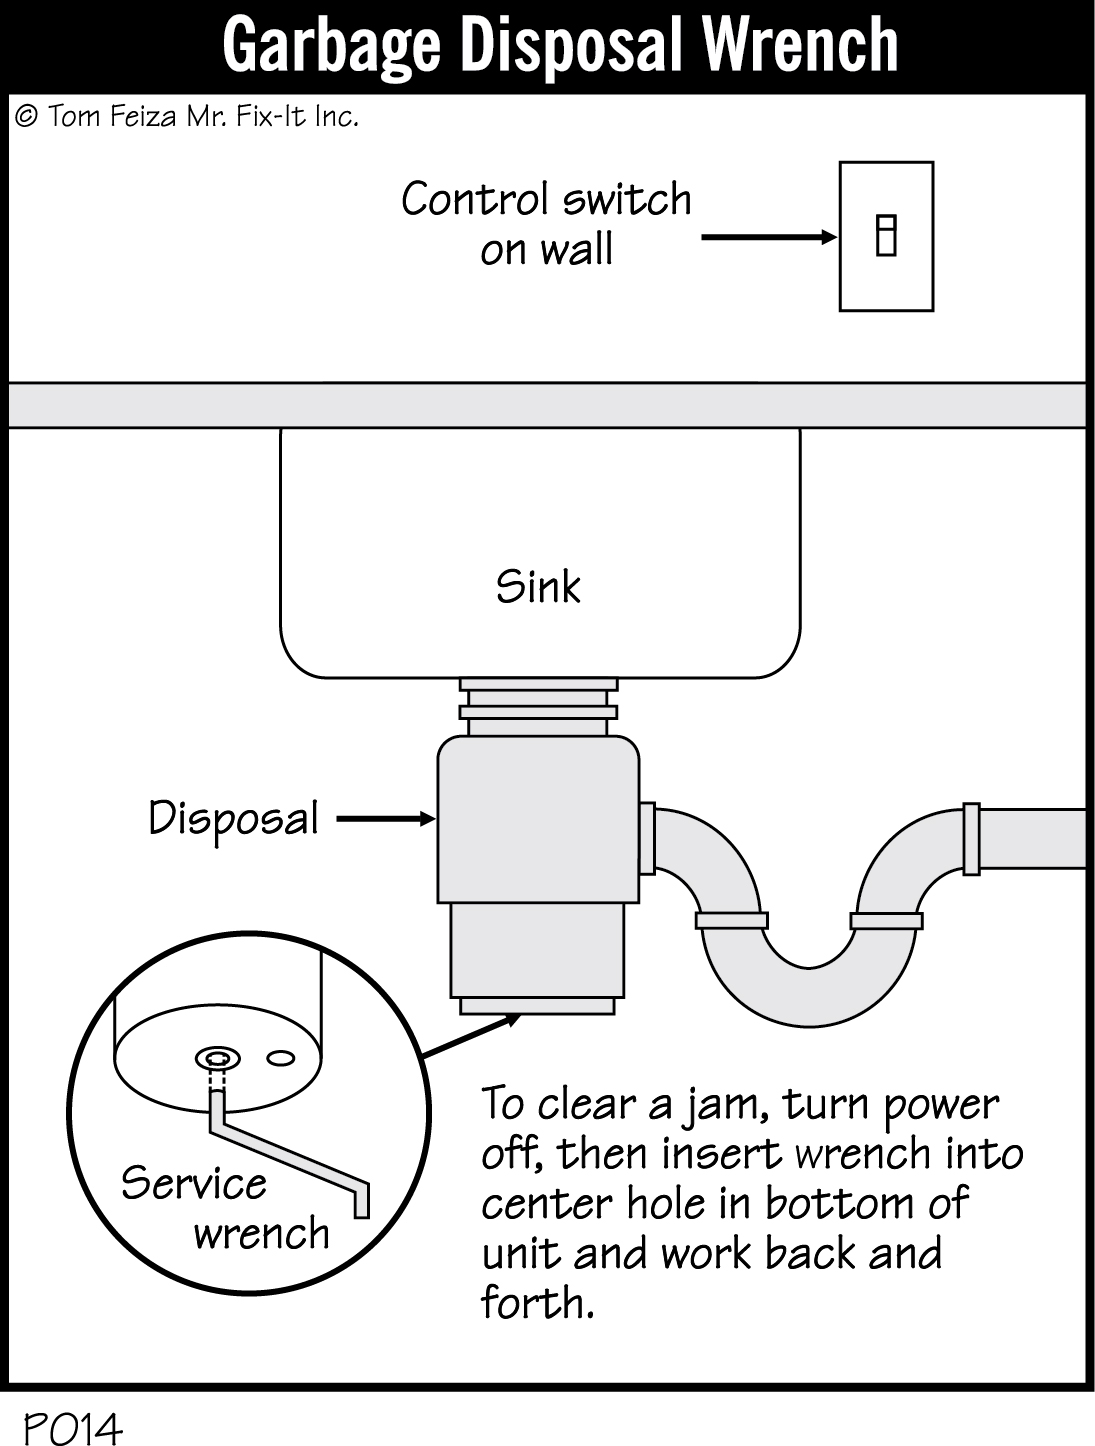 P014 - Garbage Disposal Wrench